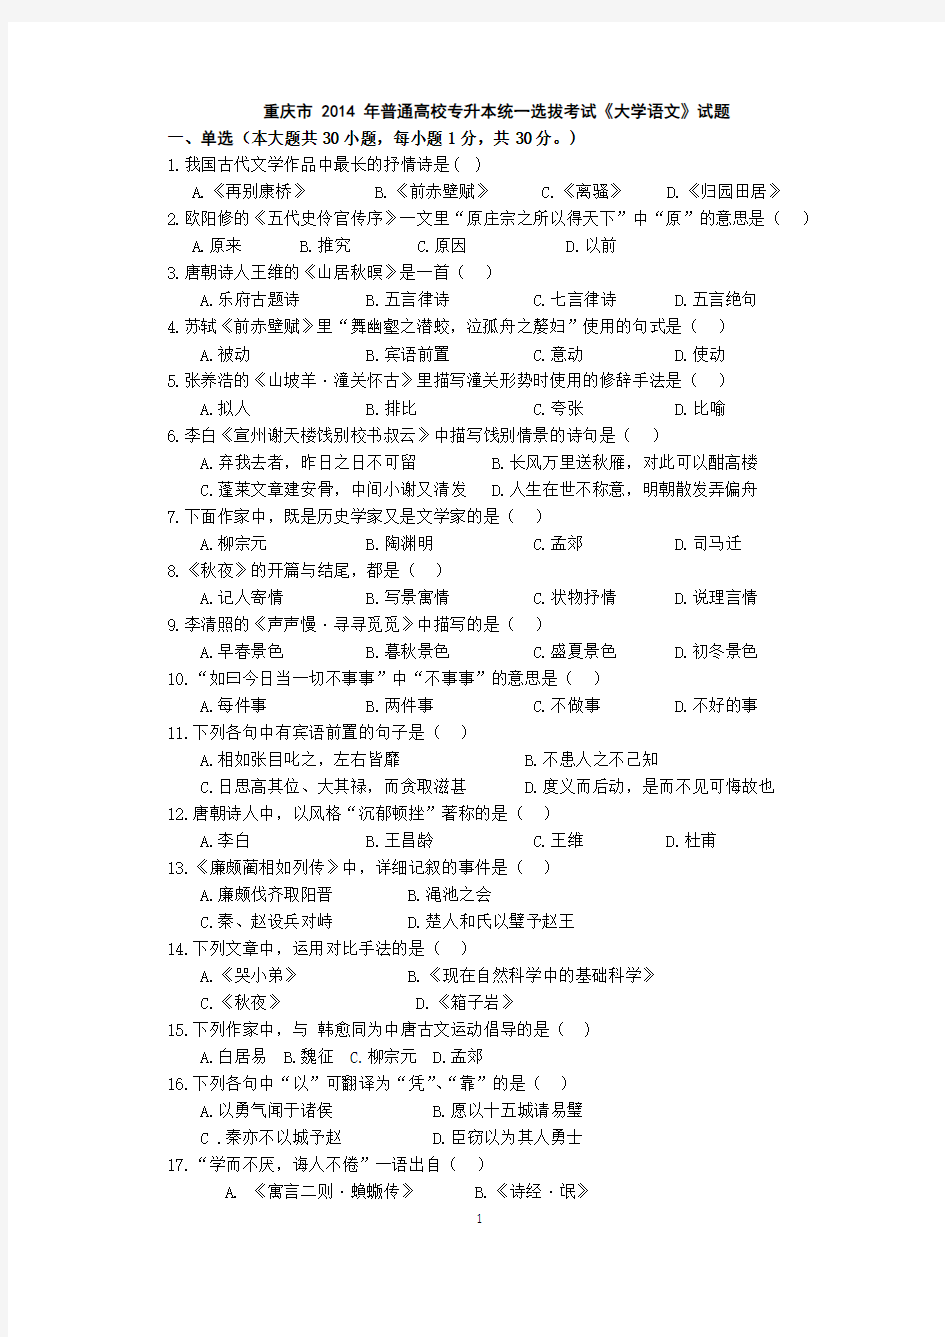 重庆市 2014年普通高校专升本统一选拔考试《大学语文》试题